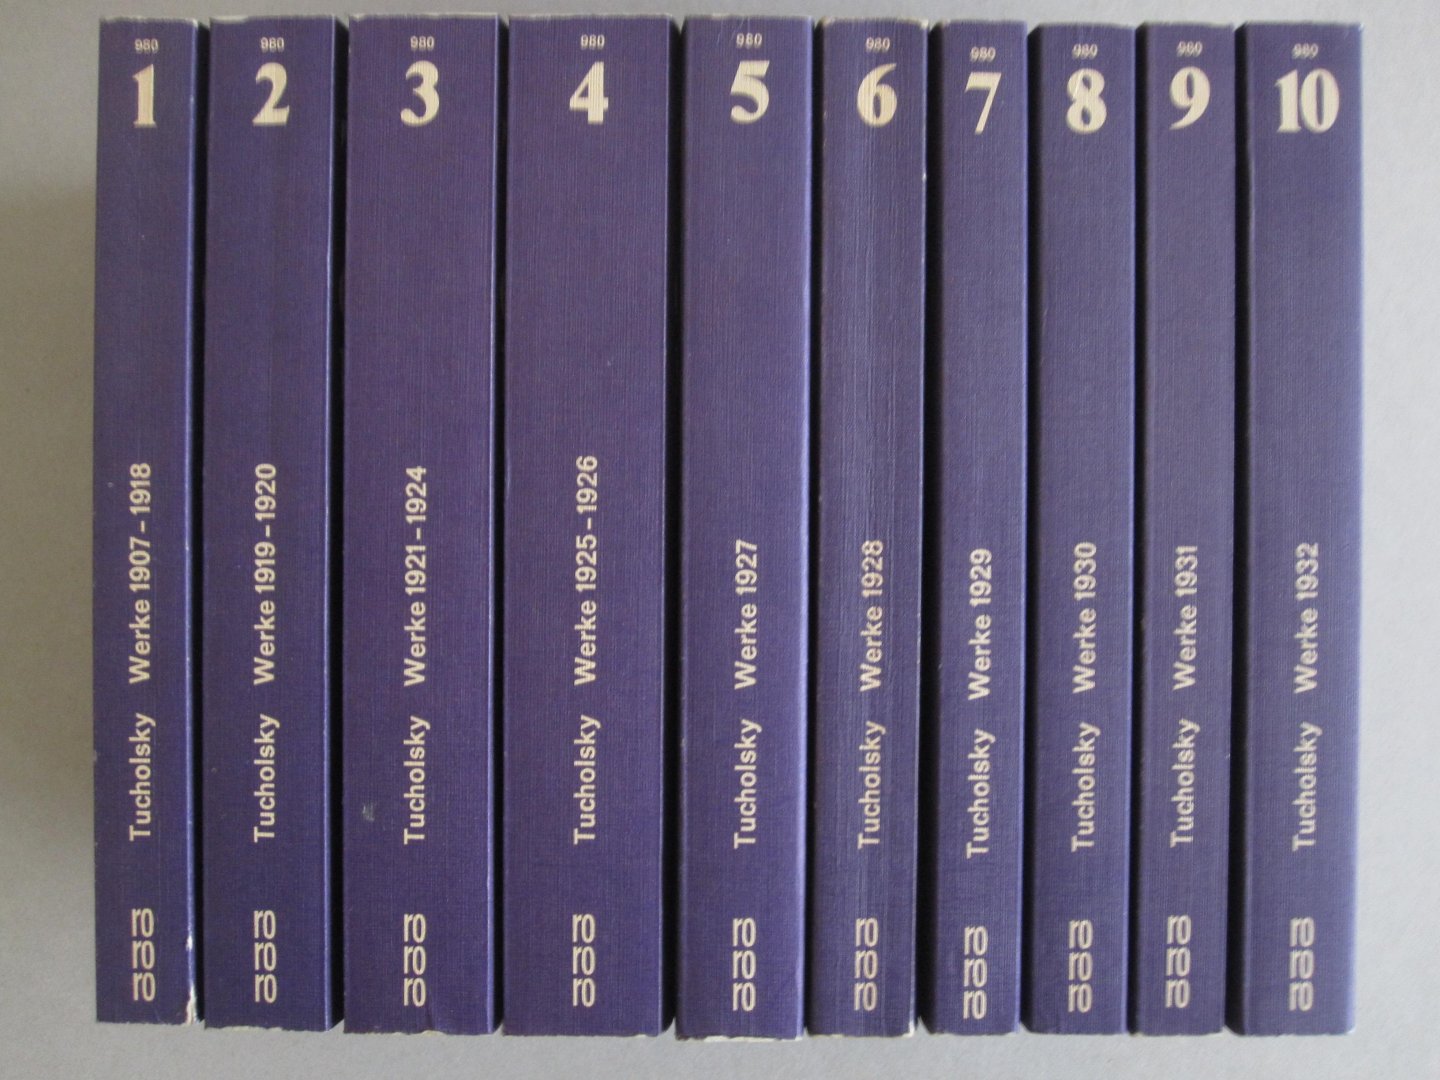 Kurt Tucholsky - Gesammelte Werke (10 volumes)